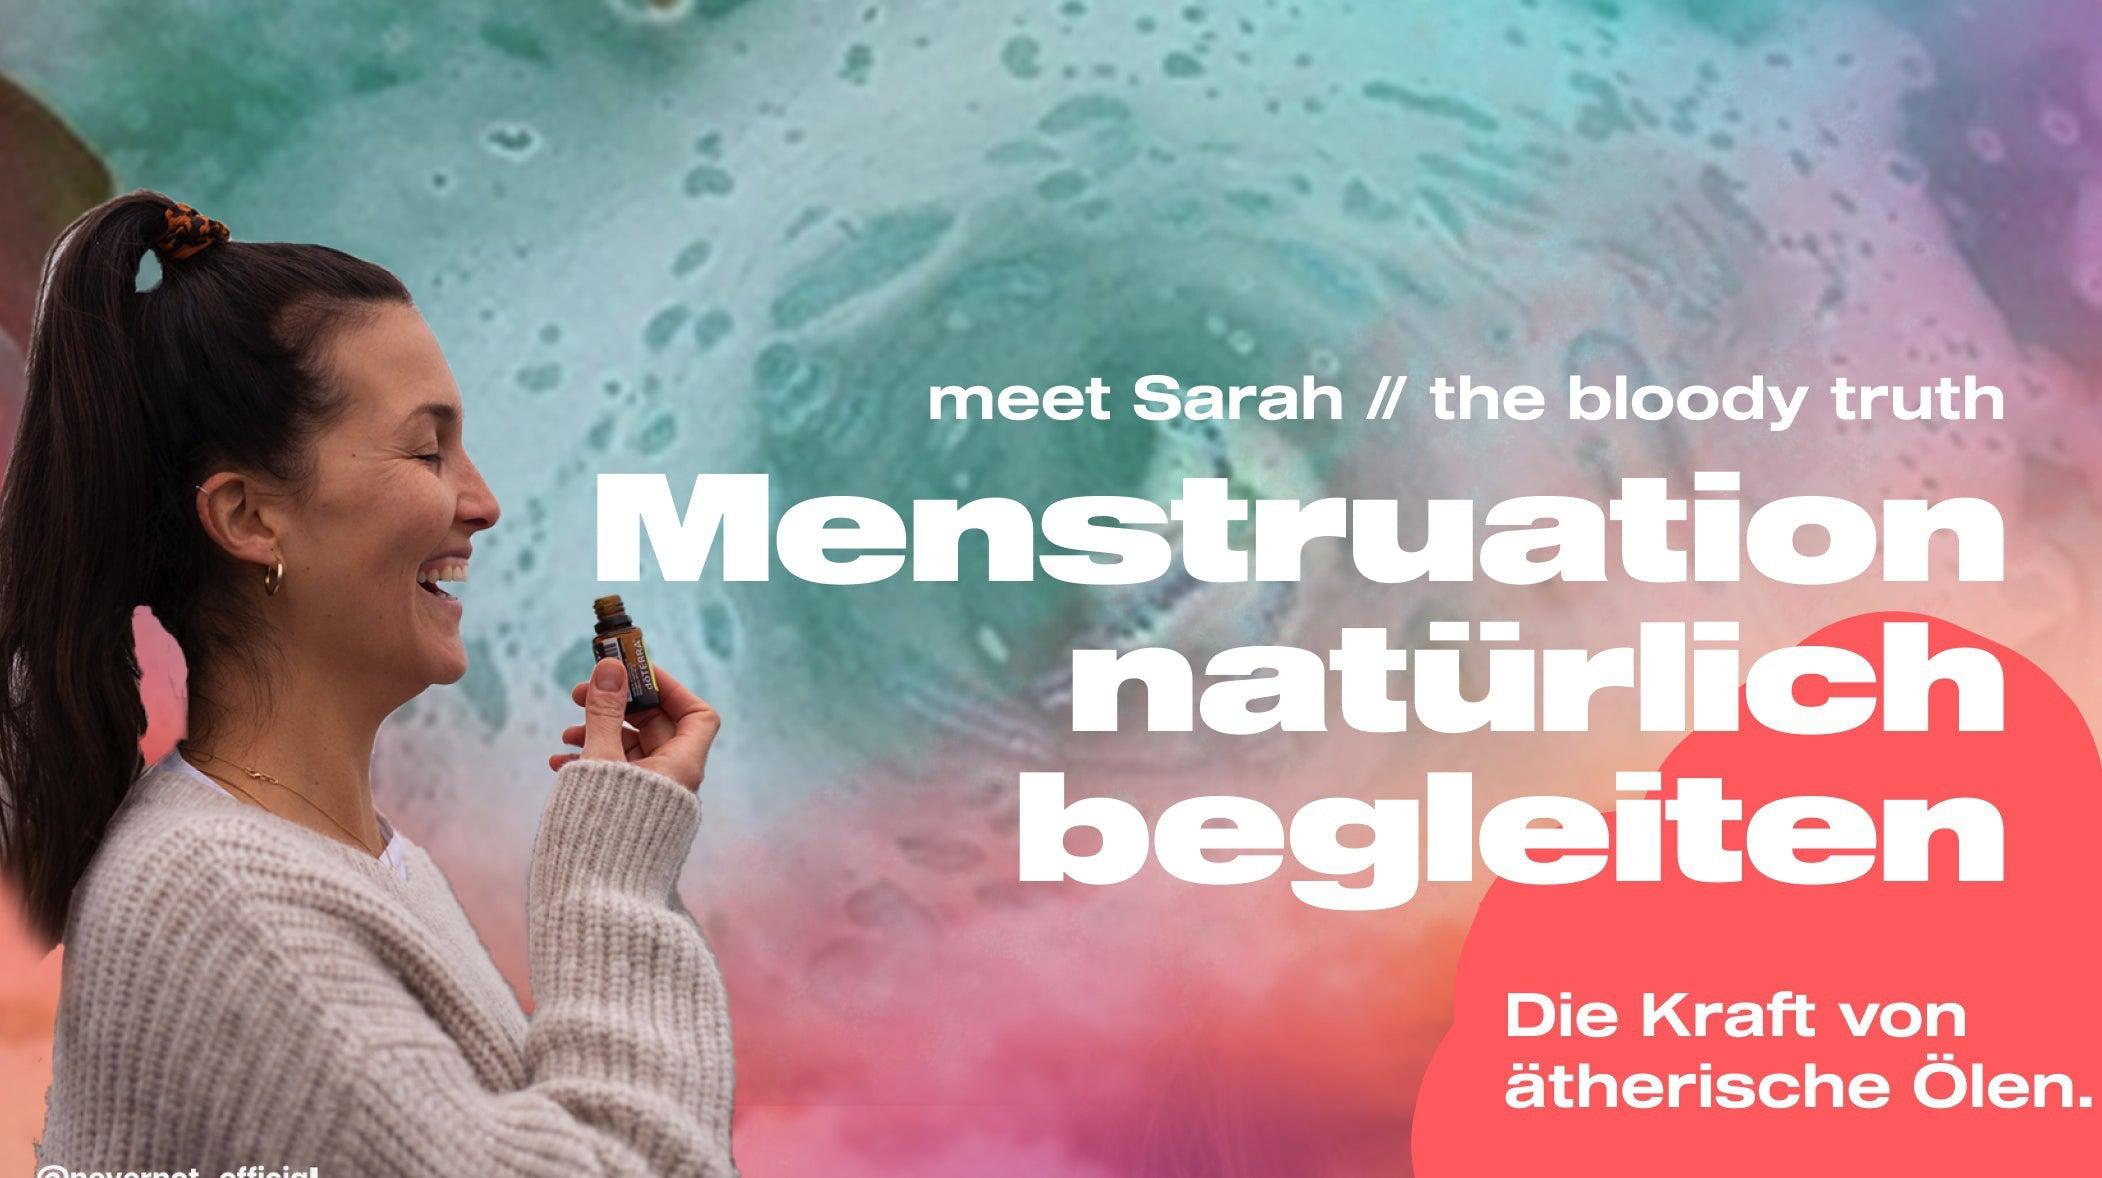 Menstruation natürlich begleiten - so kannst du ätherische Öle unterstützend nutzen